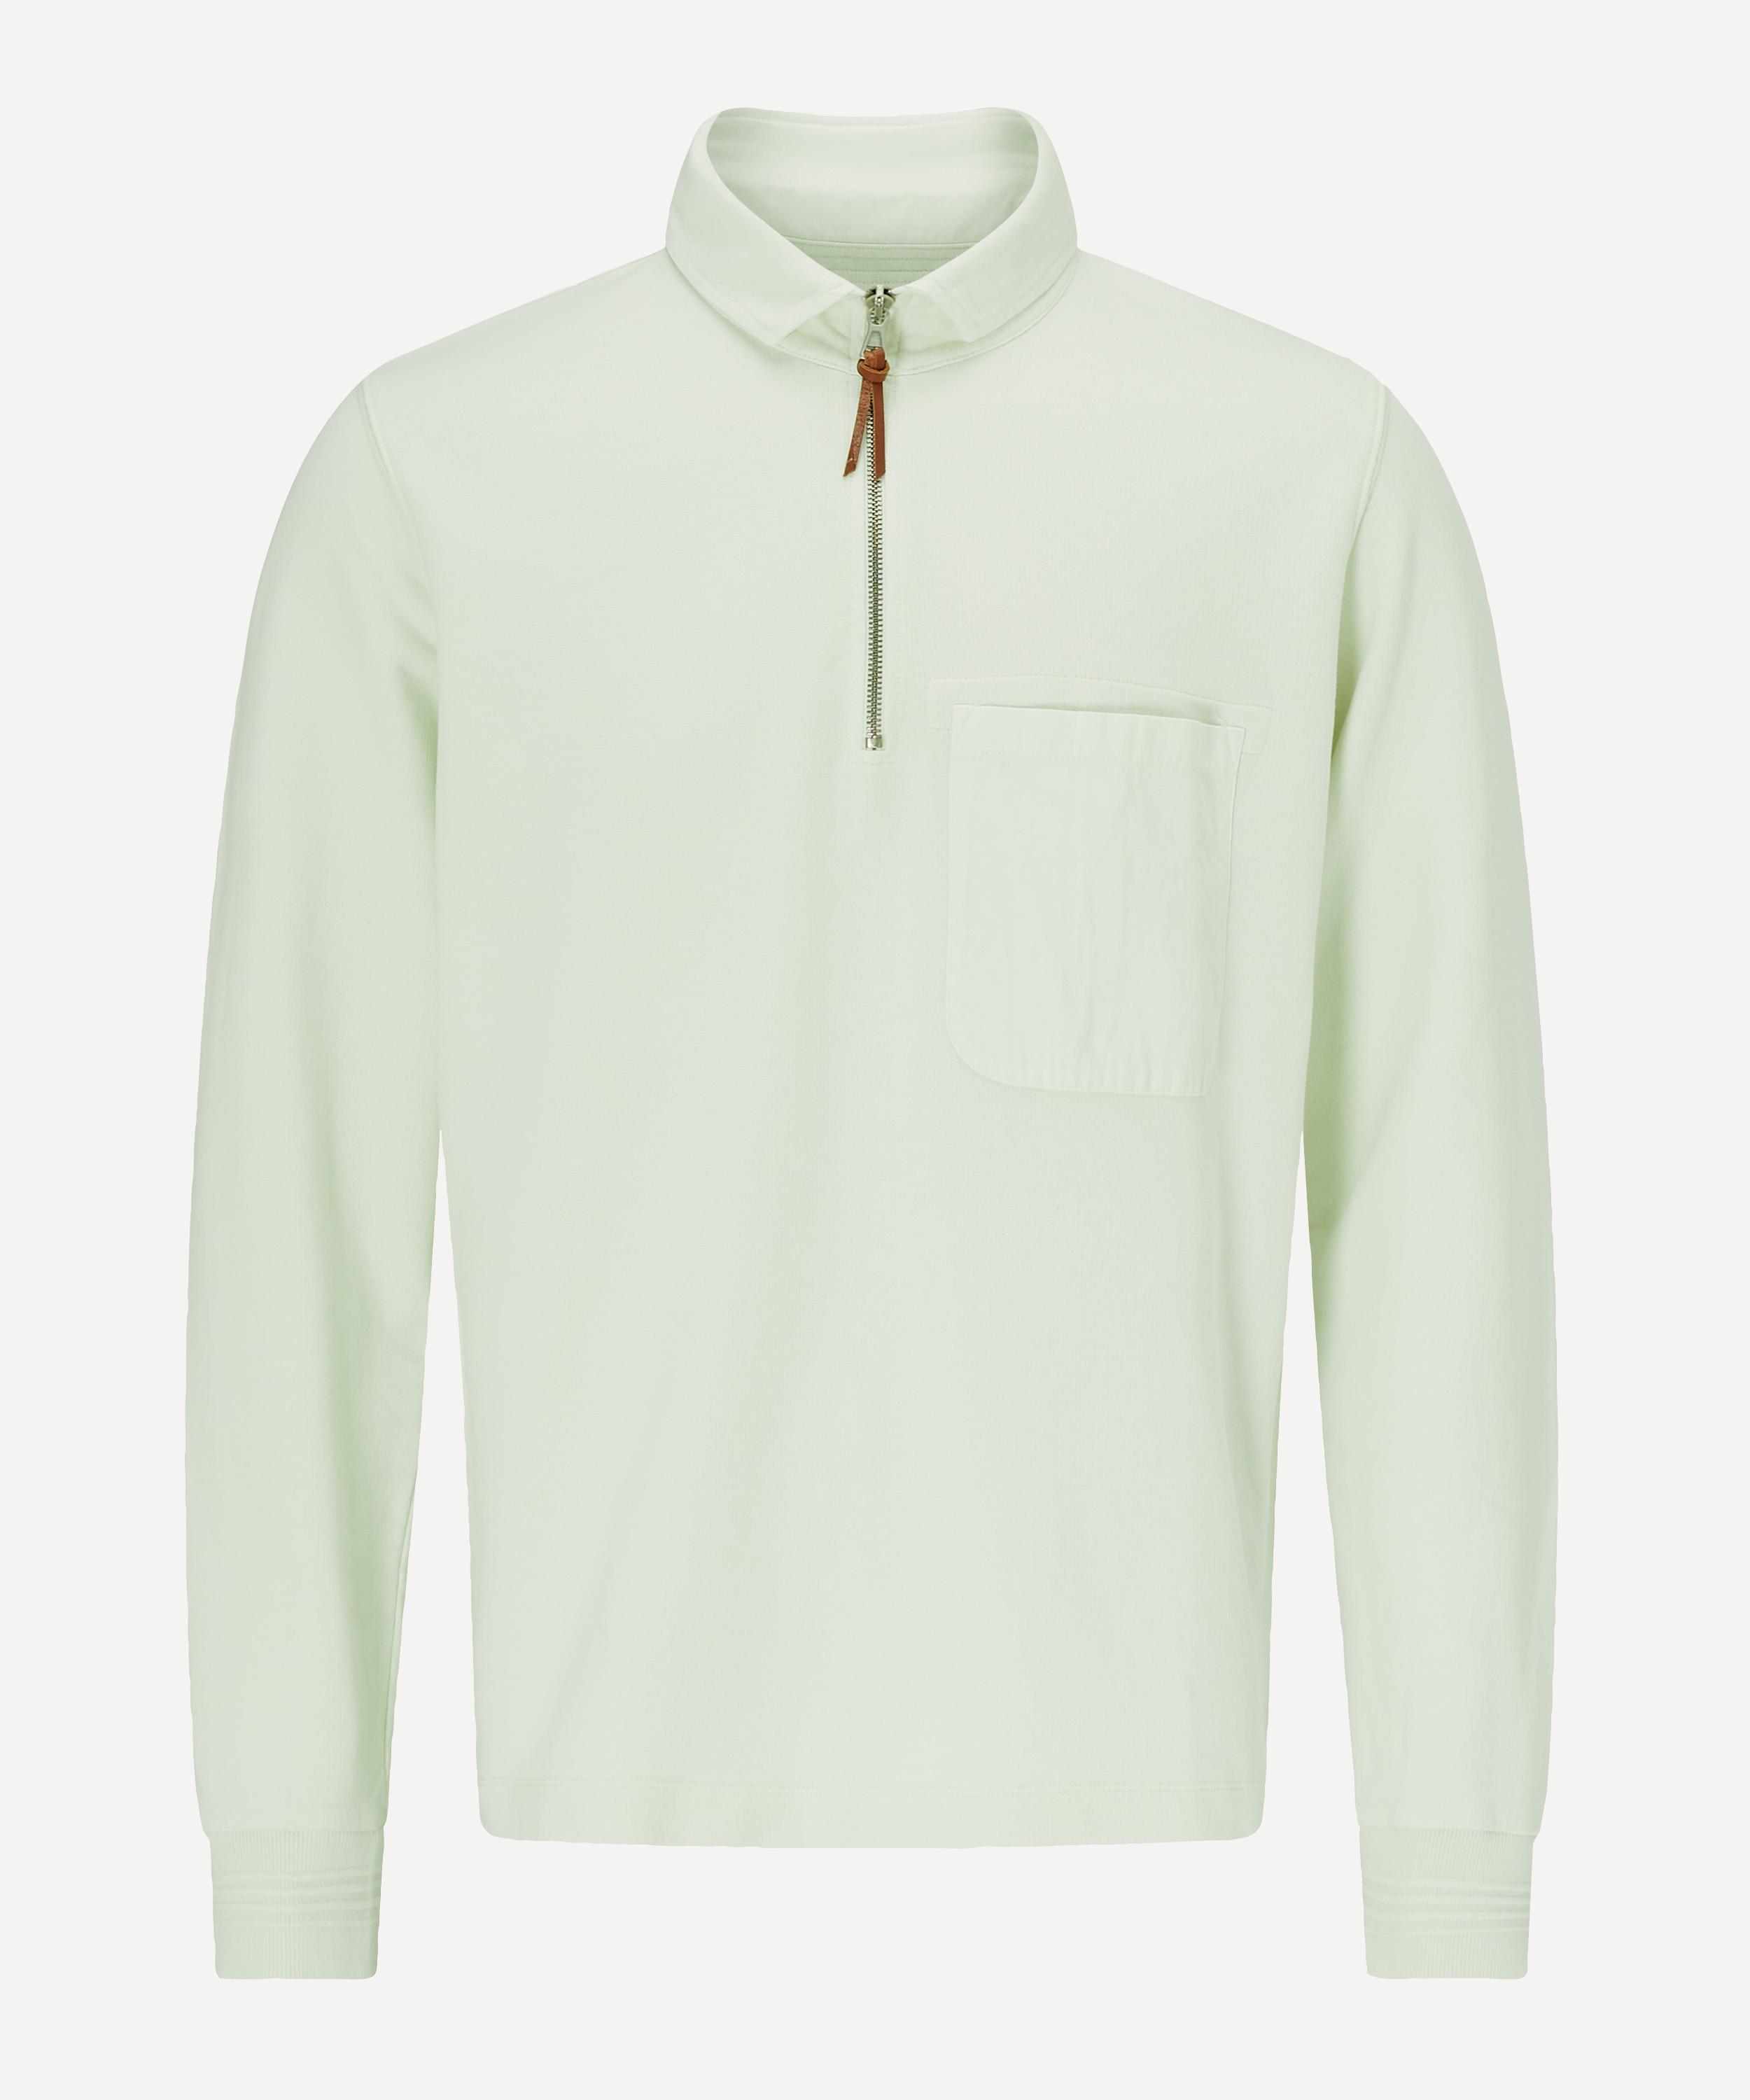 half zip sweatshirt with pockets